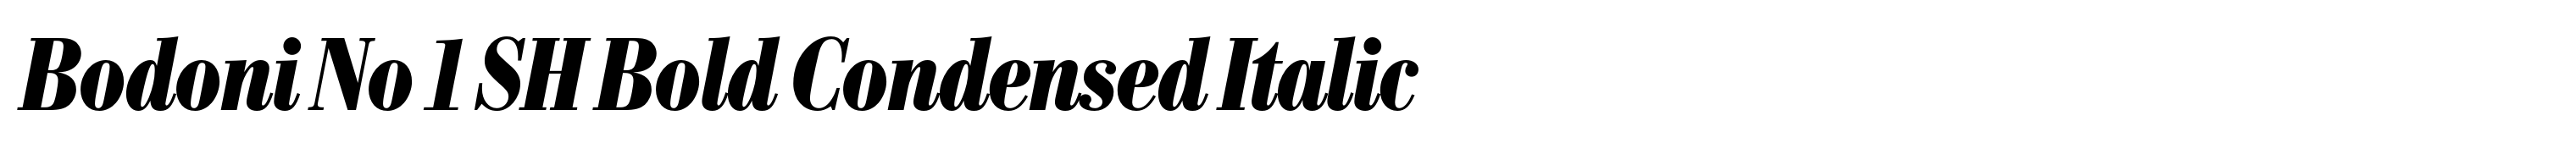 Bodoni No 1 SH Bold Condensed Italic